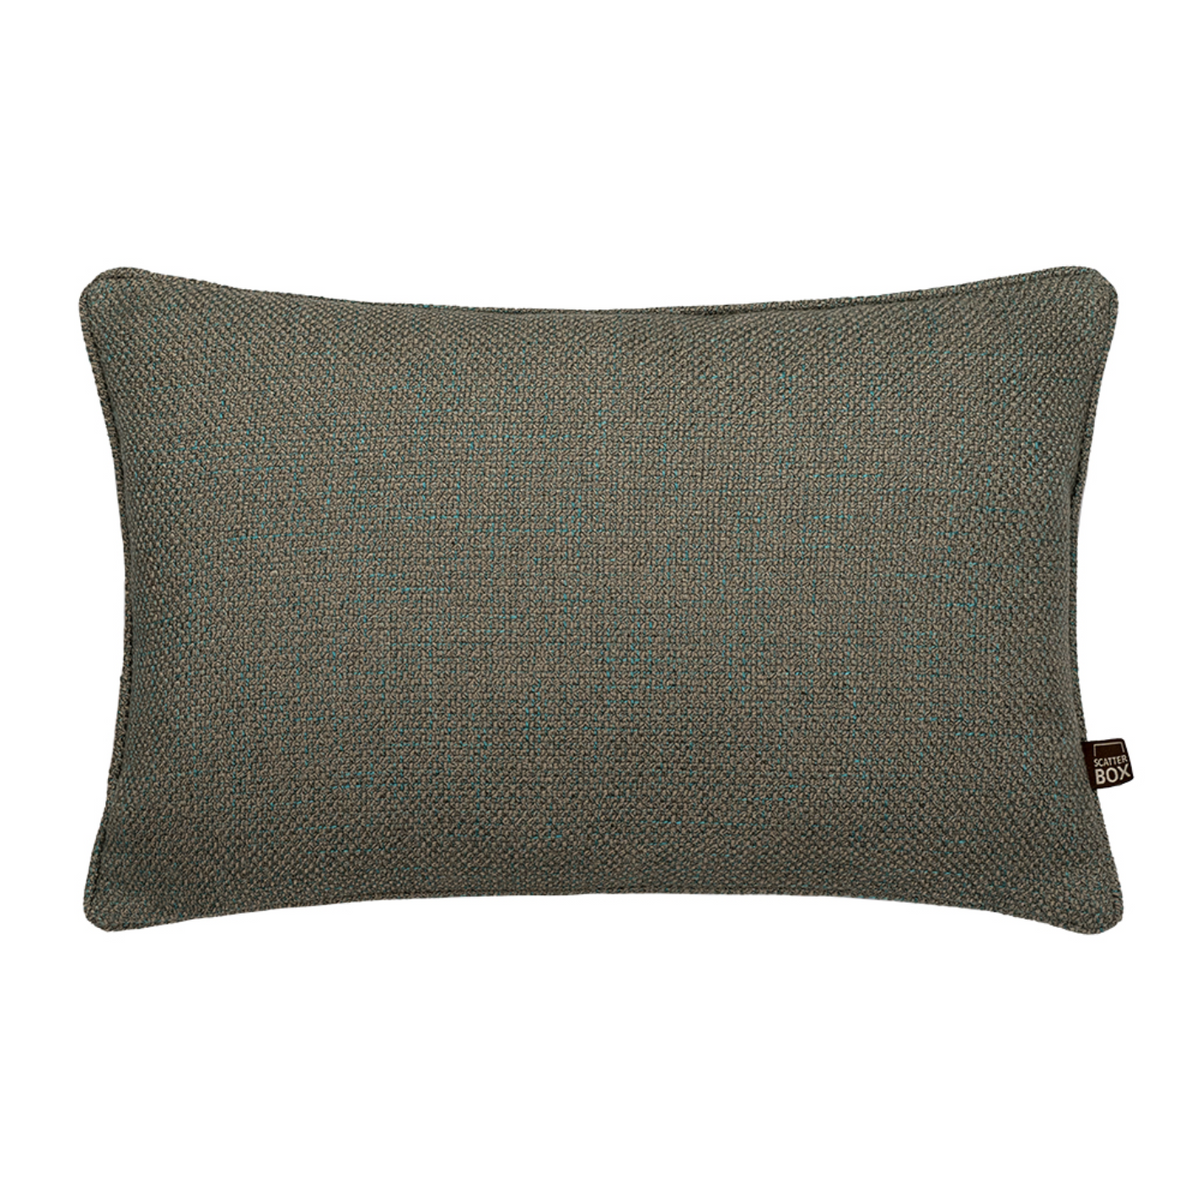 Scatterbox Hadley Green Cushion 35cm x 50cm